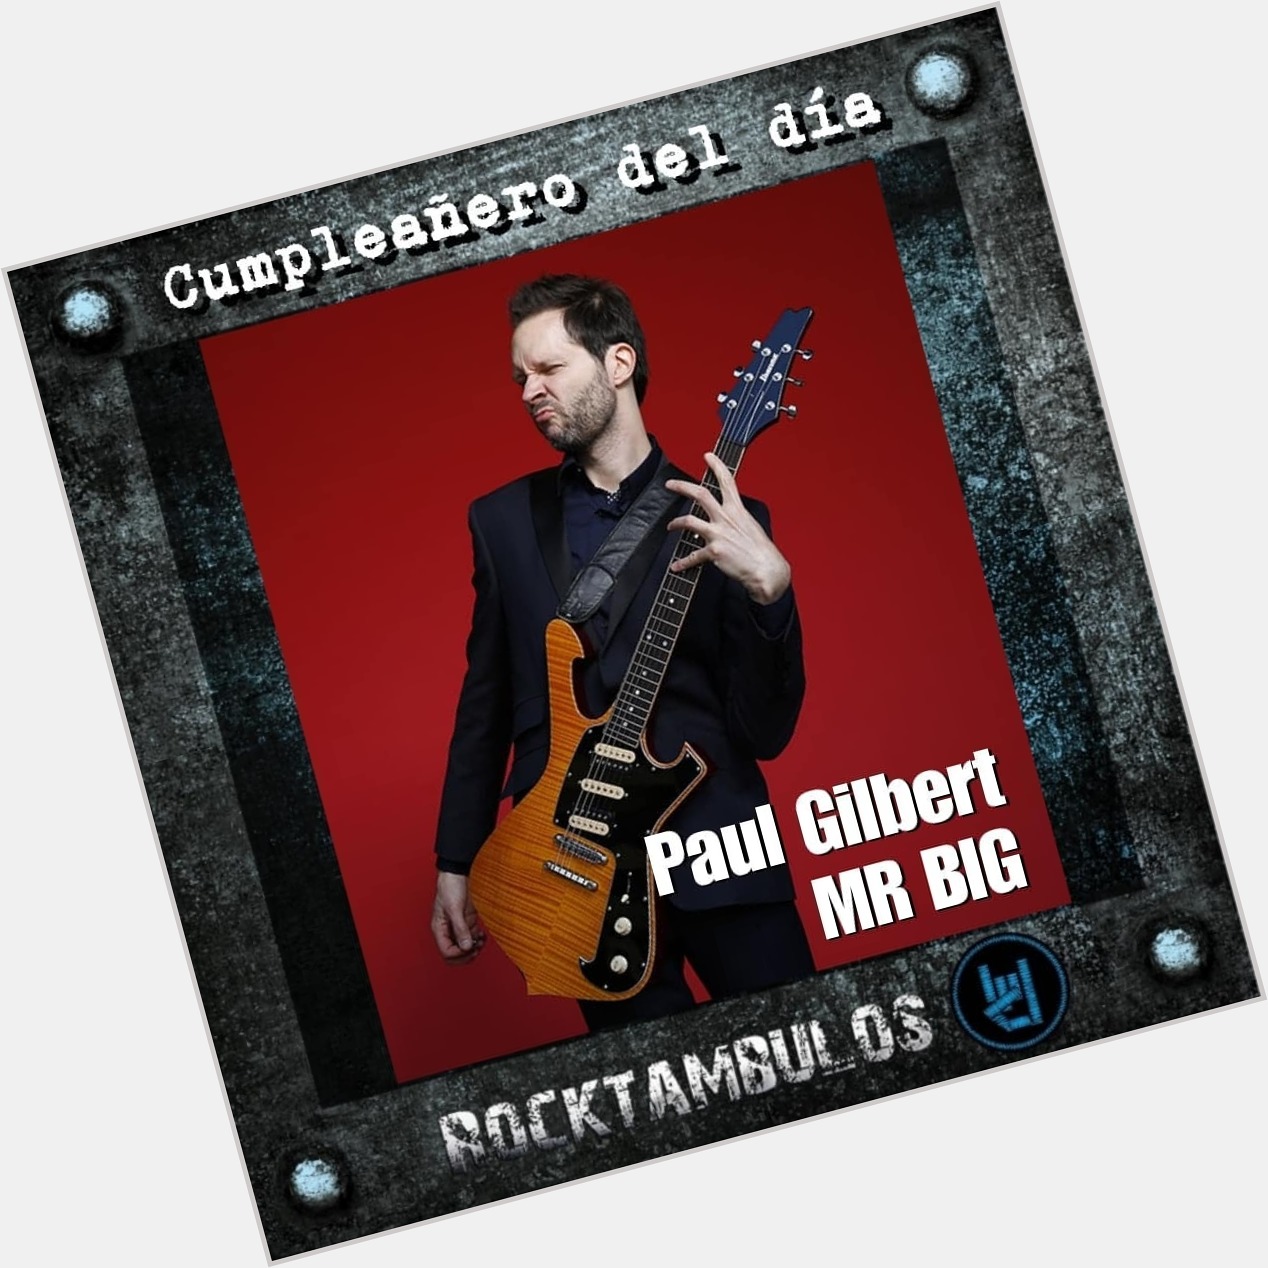 El virtuoso Paul Gilbert está cumpliendo 55 años el día de hoy. Happy birthday Paul 